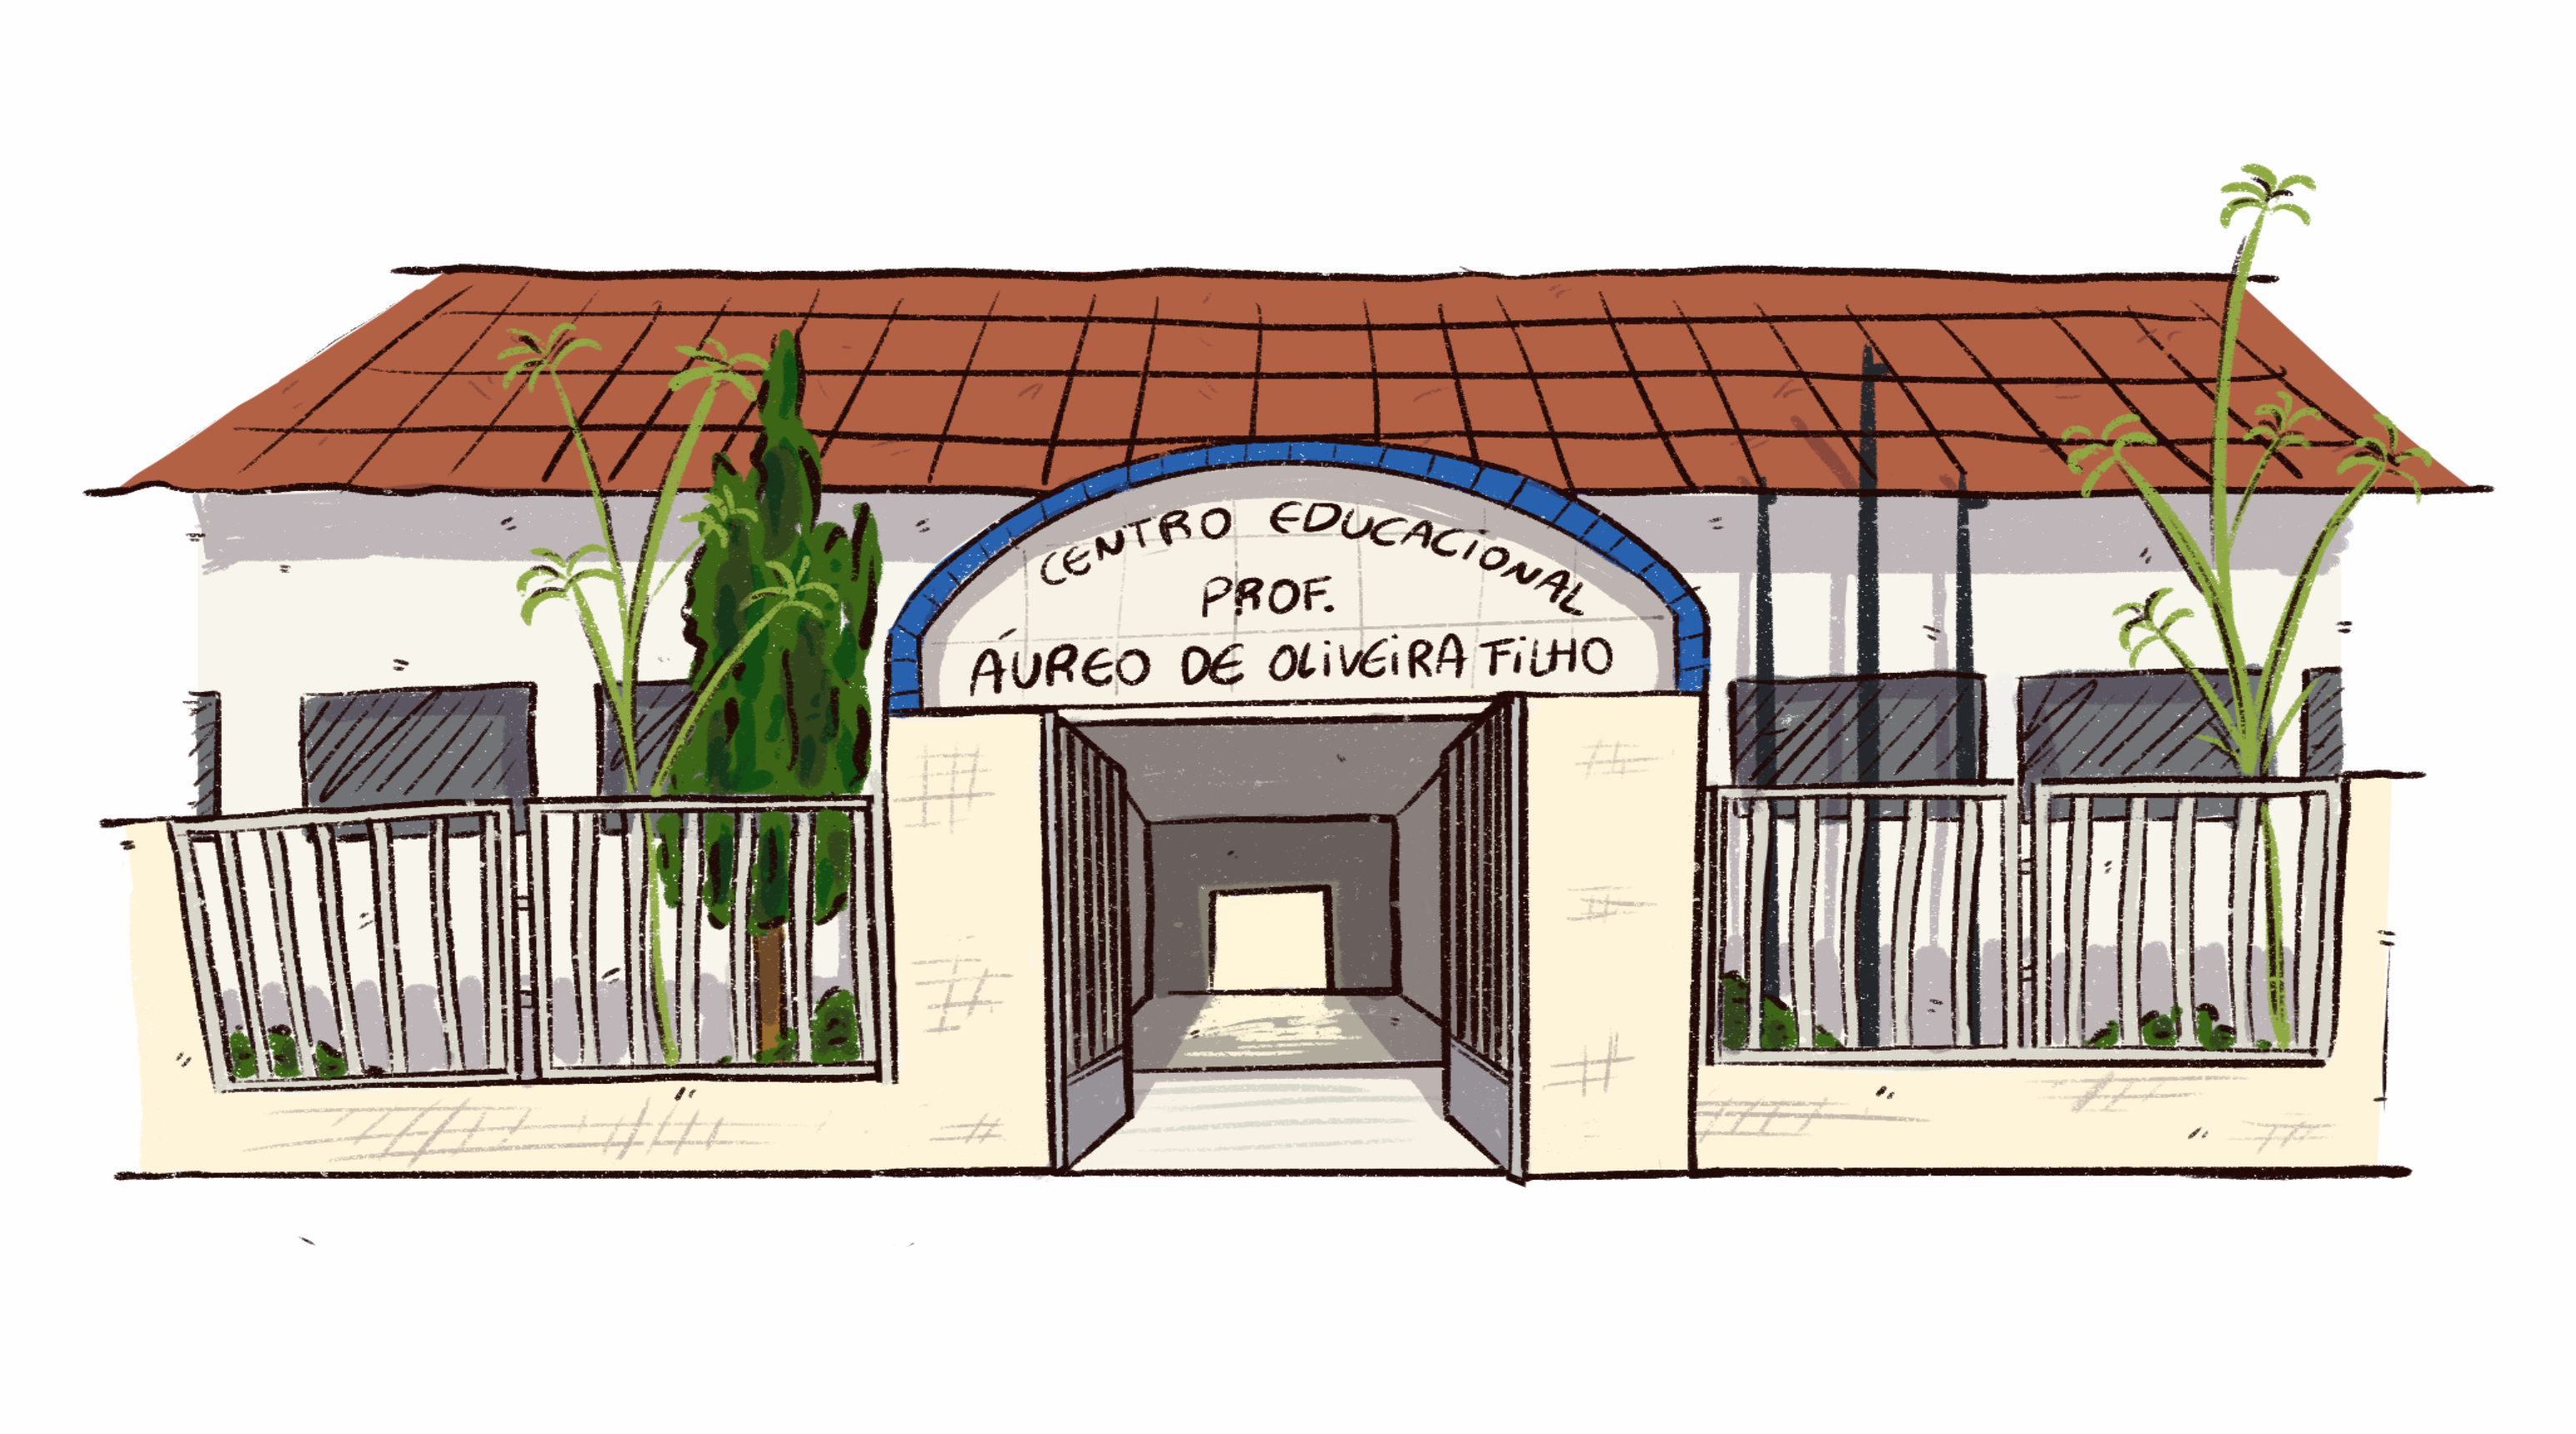 Centro Educacional Professor Áureo de Oliveira Filho